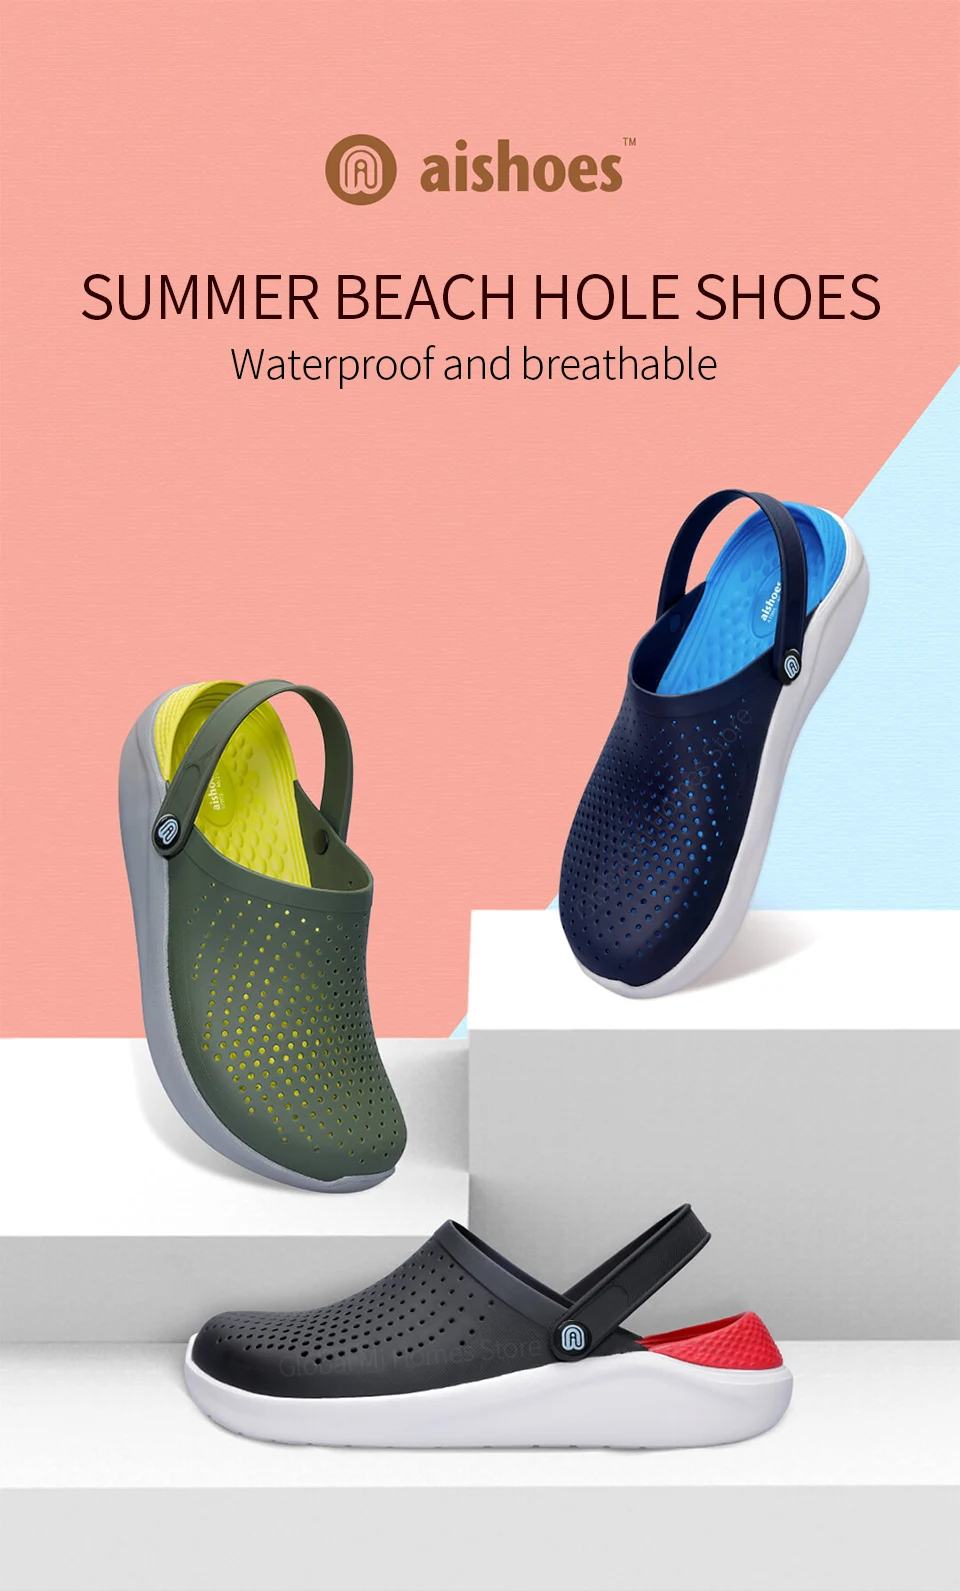 Xiaomi Youpin Aishoes летняя пляжная обувь Cave дышащая и гидрофобная мягкая и удобная обувь два способа ношения